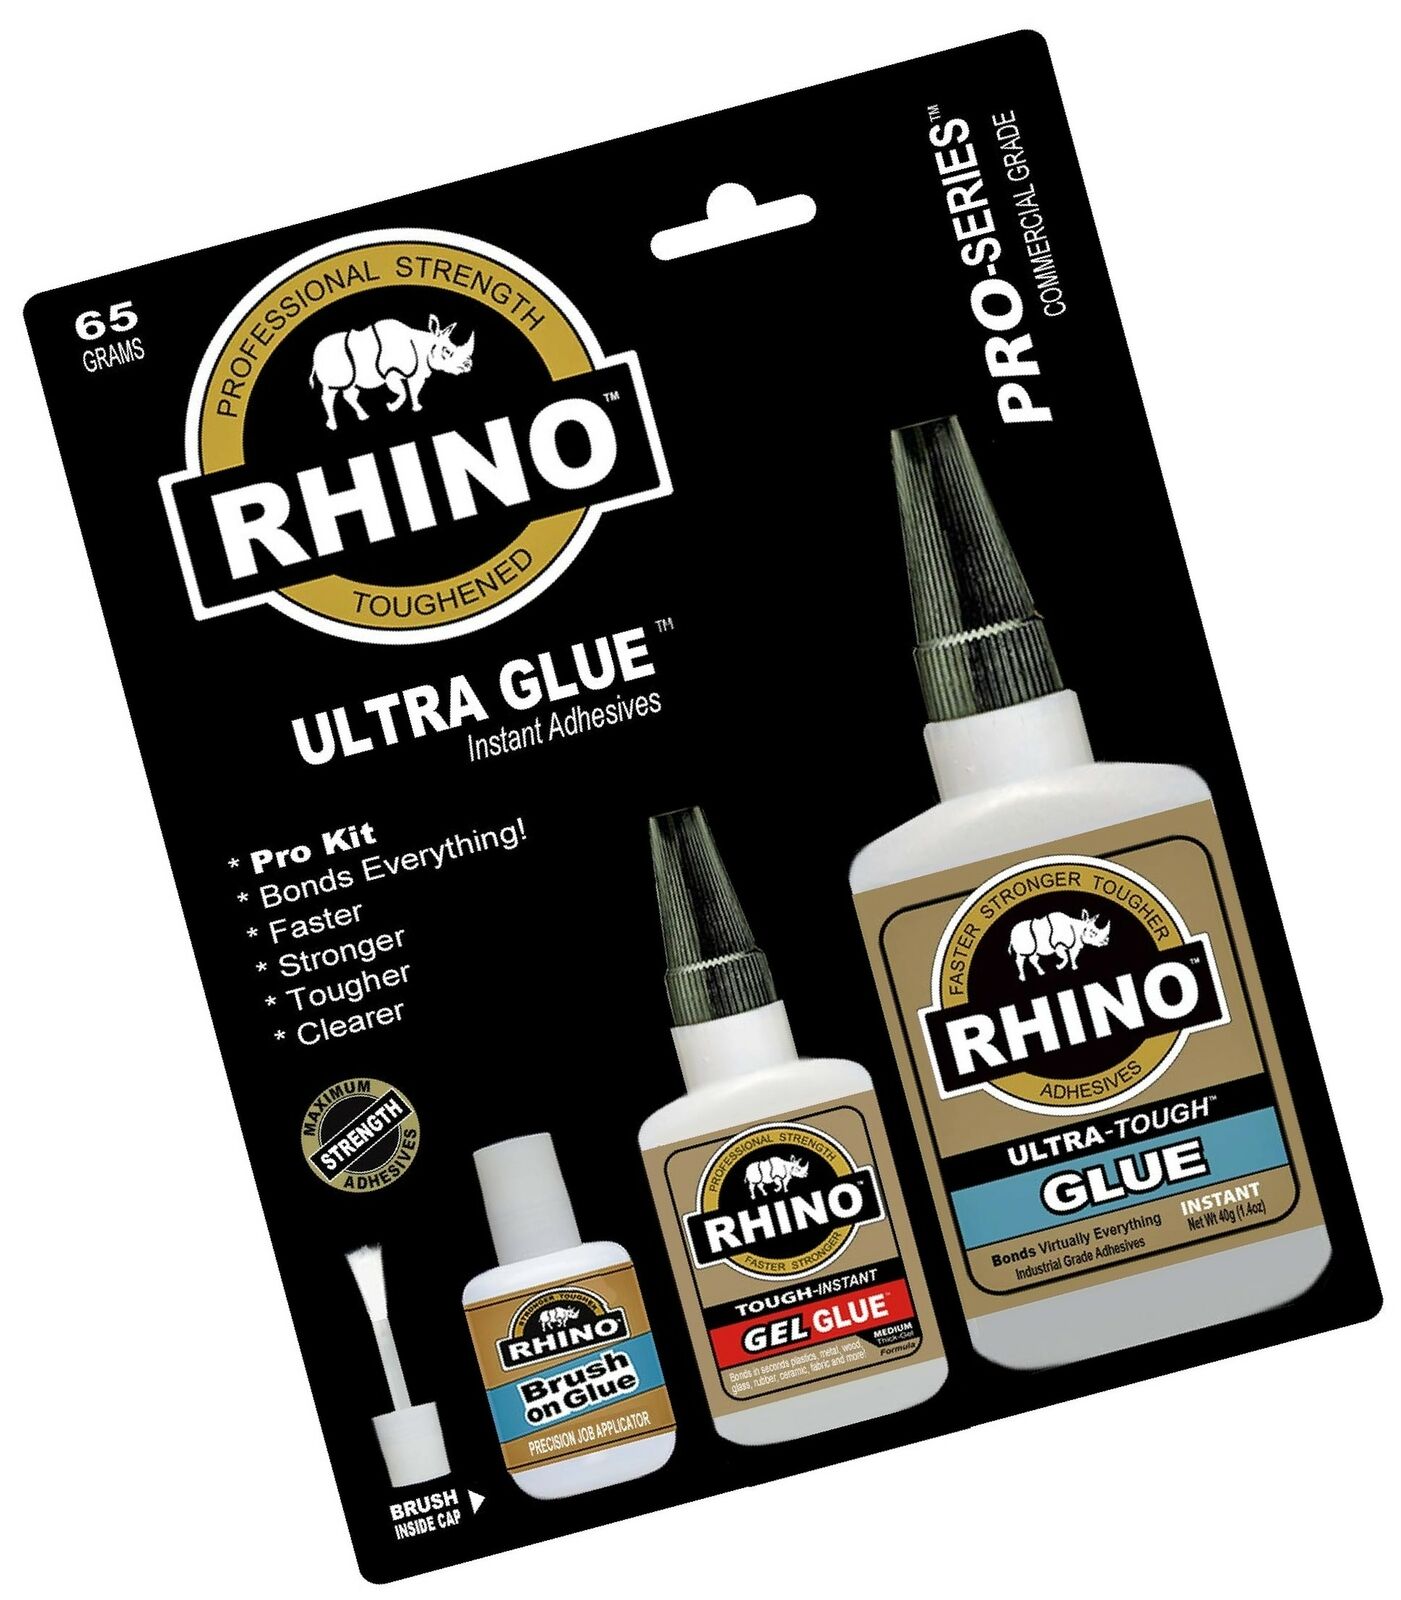 Where Can You Buy Rhino Glue